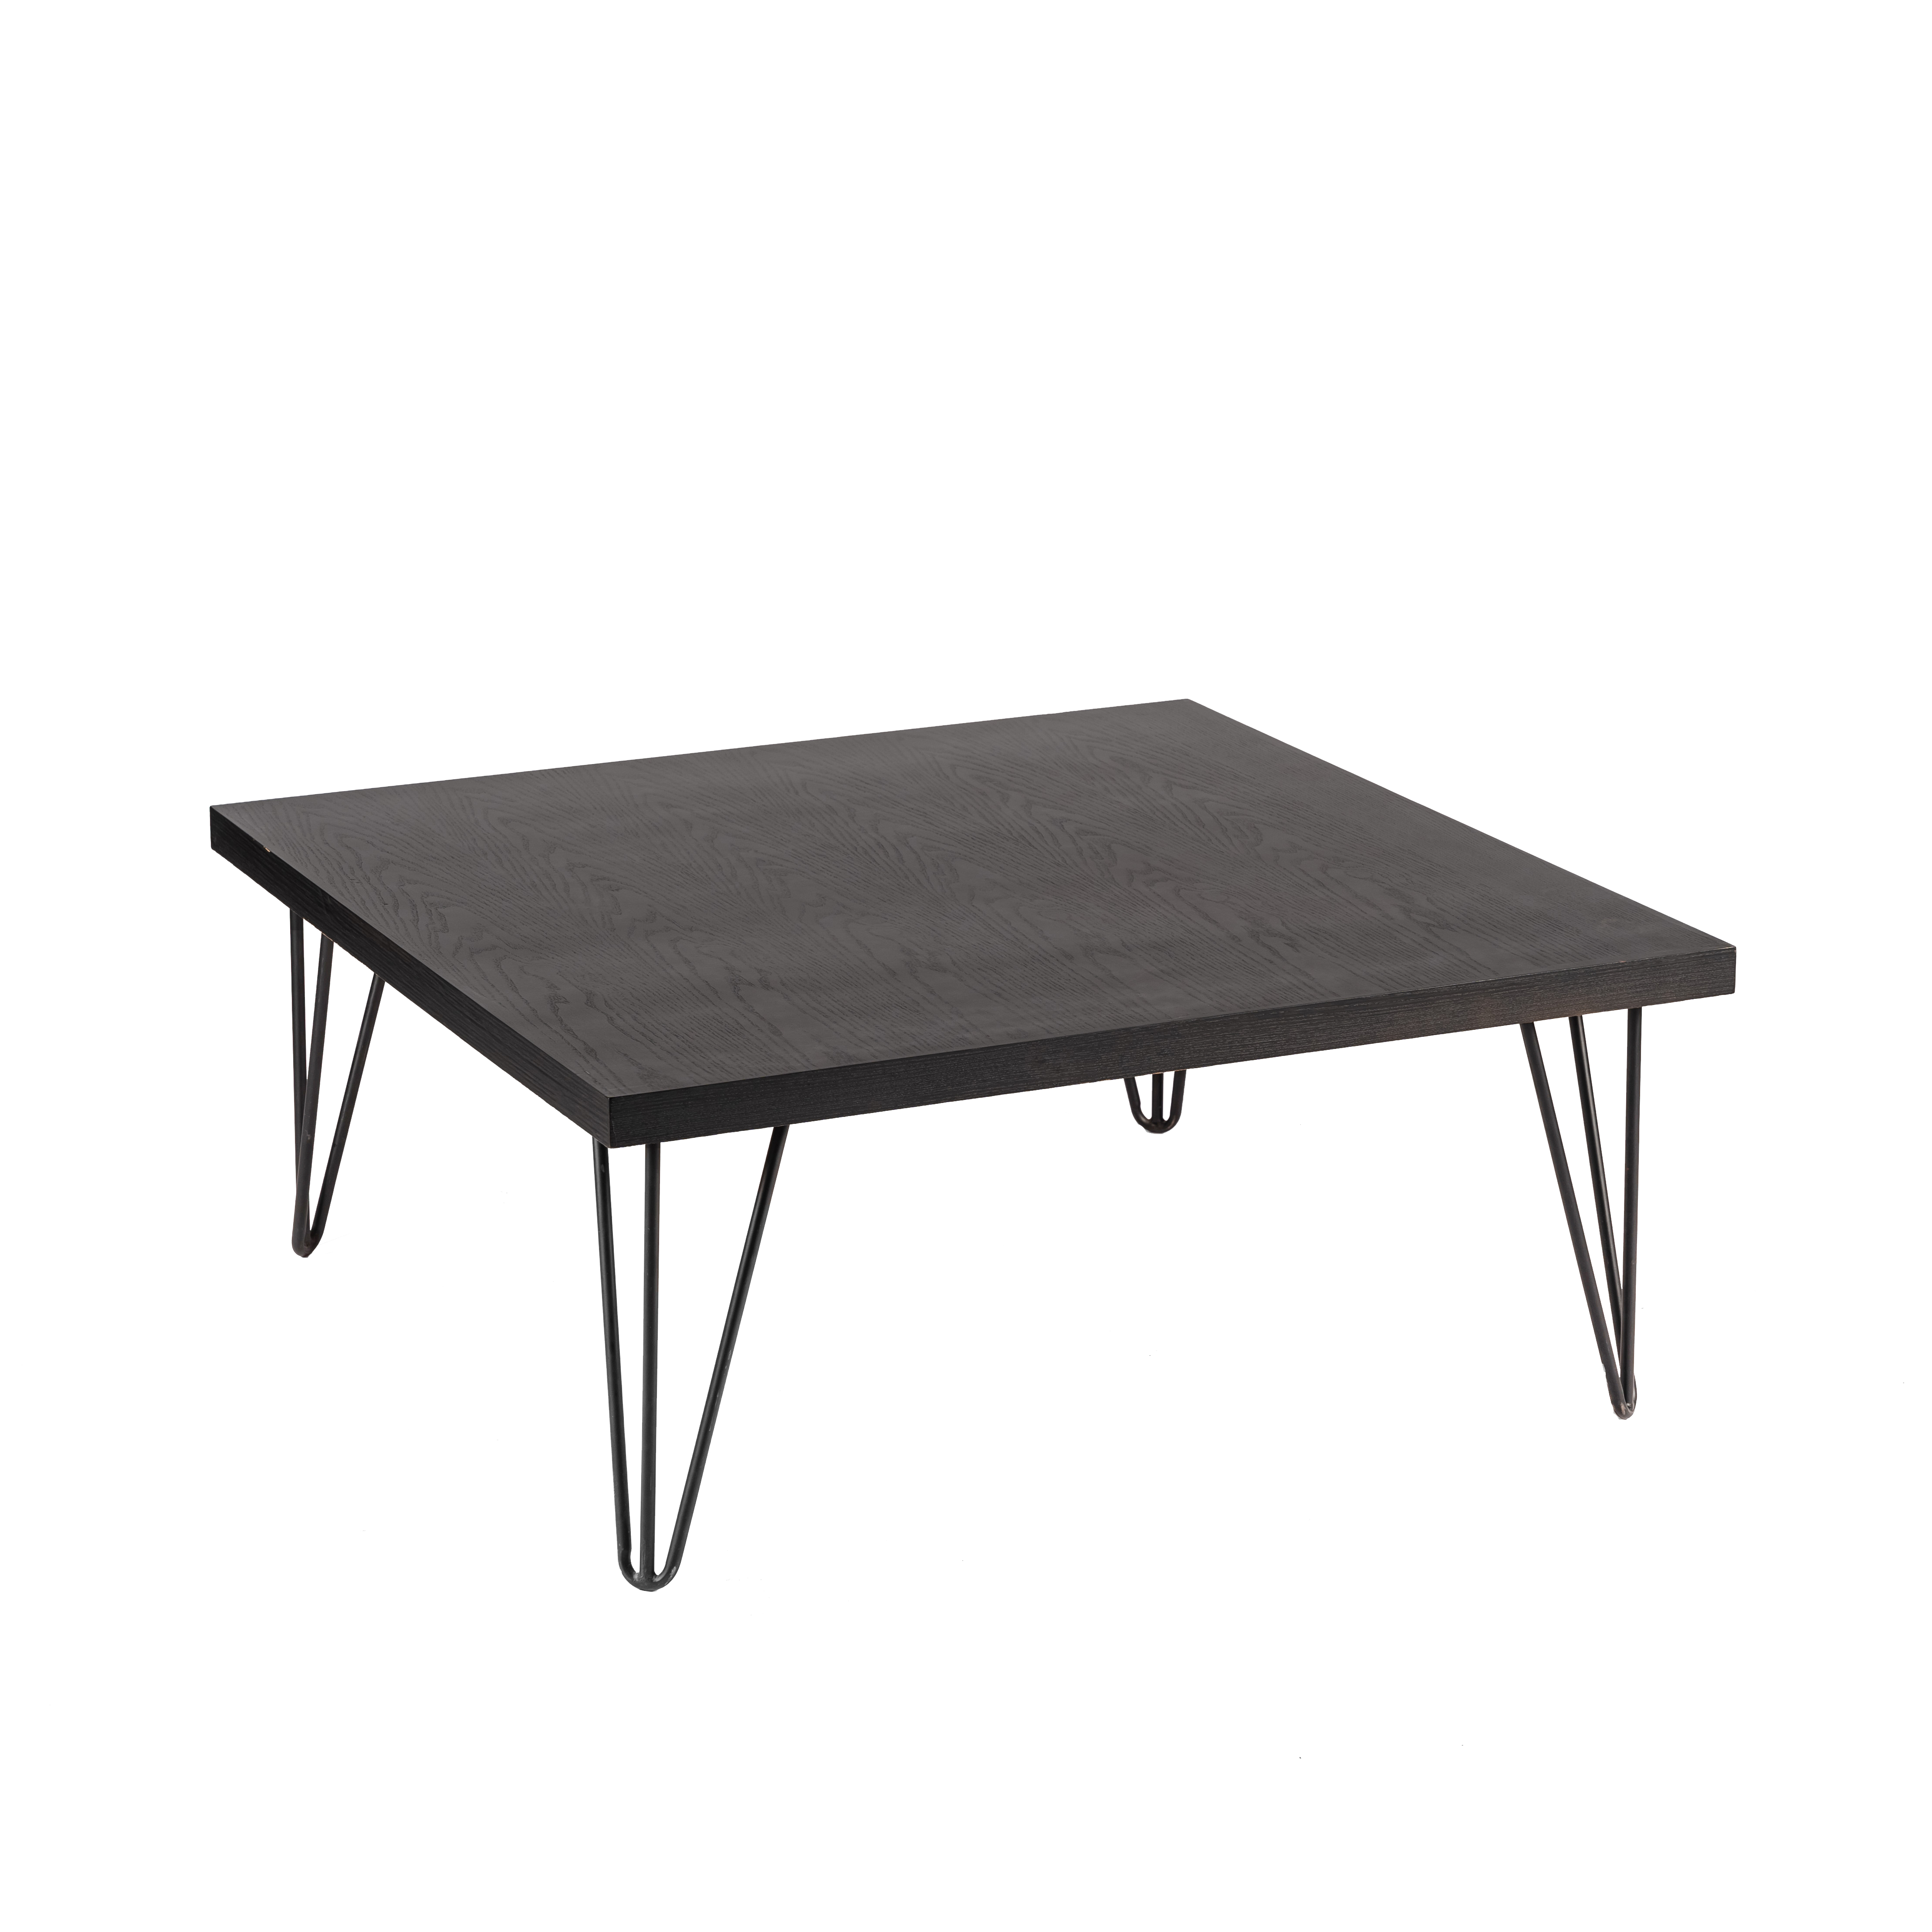 Blackwash Square coffee Table Black legs 100x100